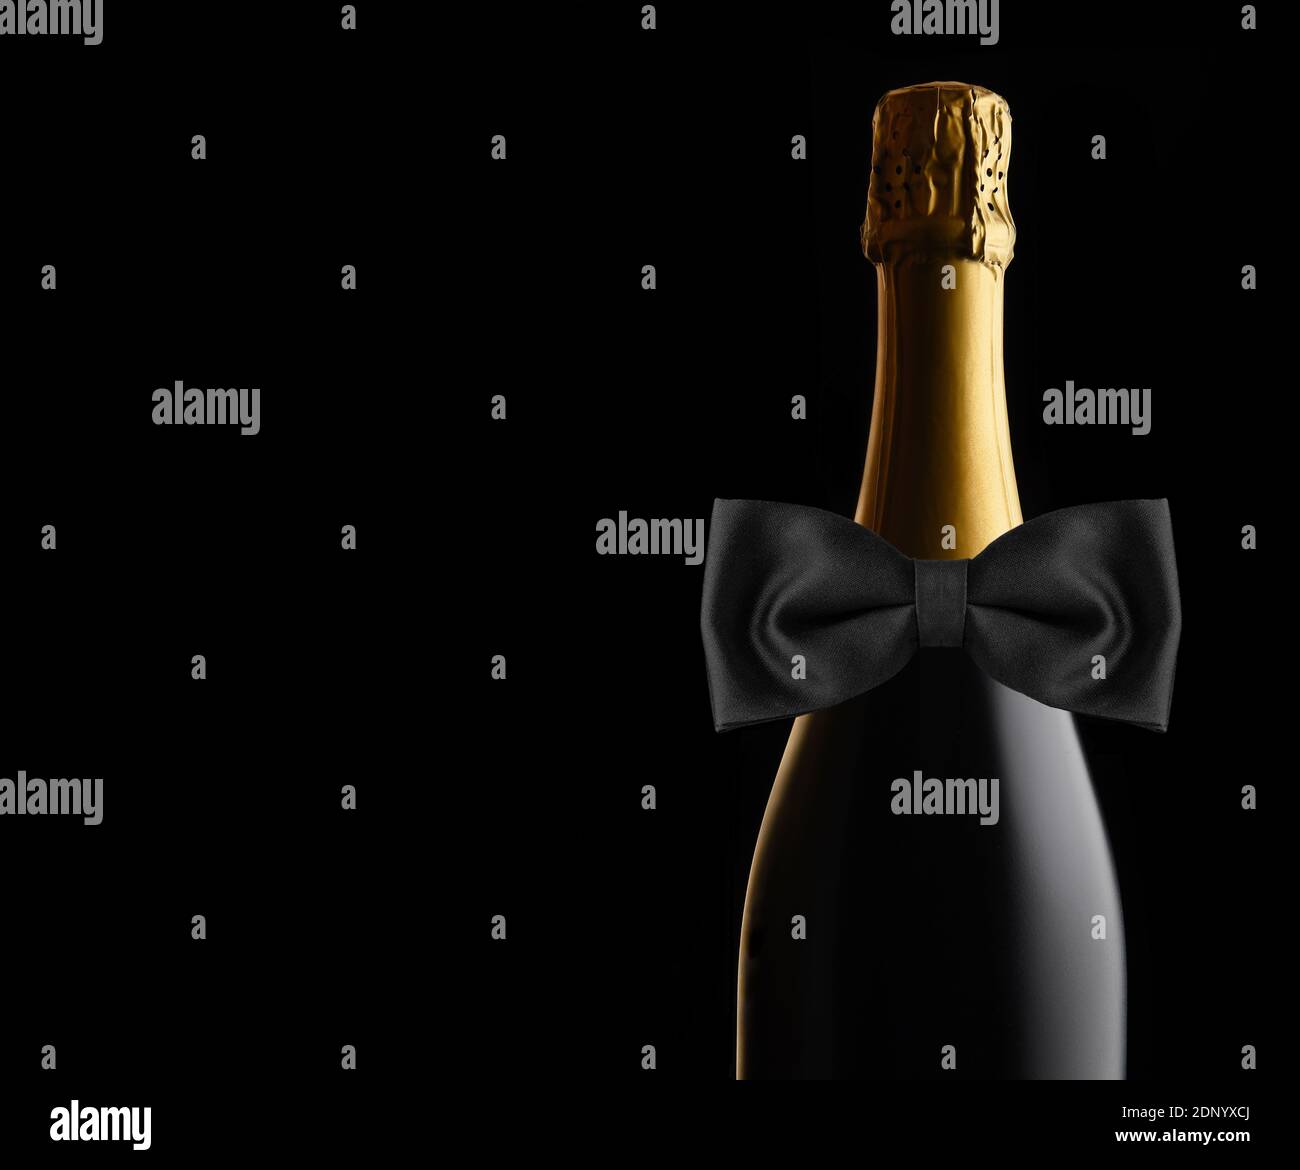 Nahaufnahme einer ungeöffneten Flasche Champagner auf schwarzem Hintergrund mit schwarzer Fliege. Ideal für Hochzeit, Jubiläum oder Neujahr Projekte, mit c Stockfoto